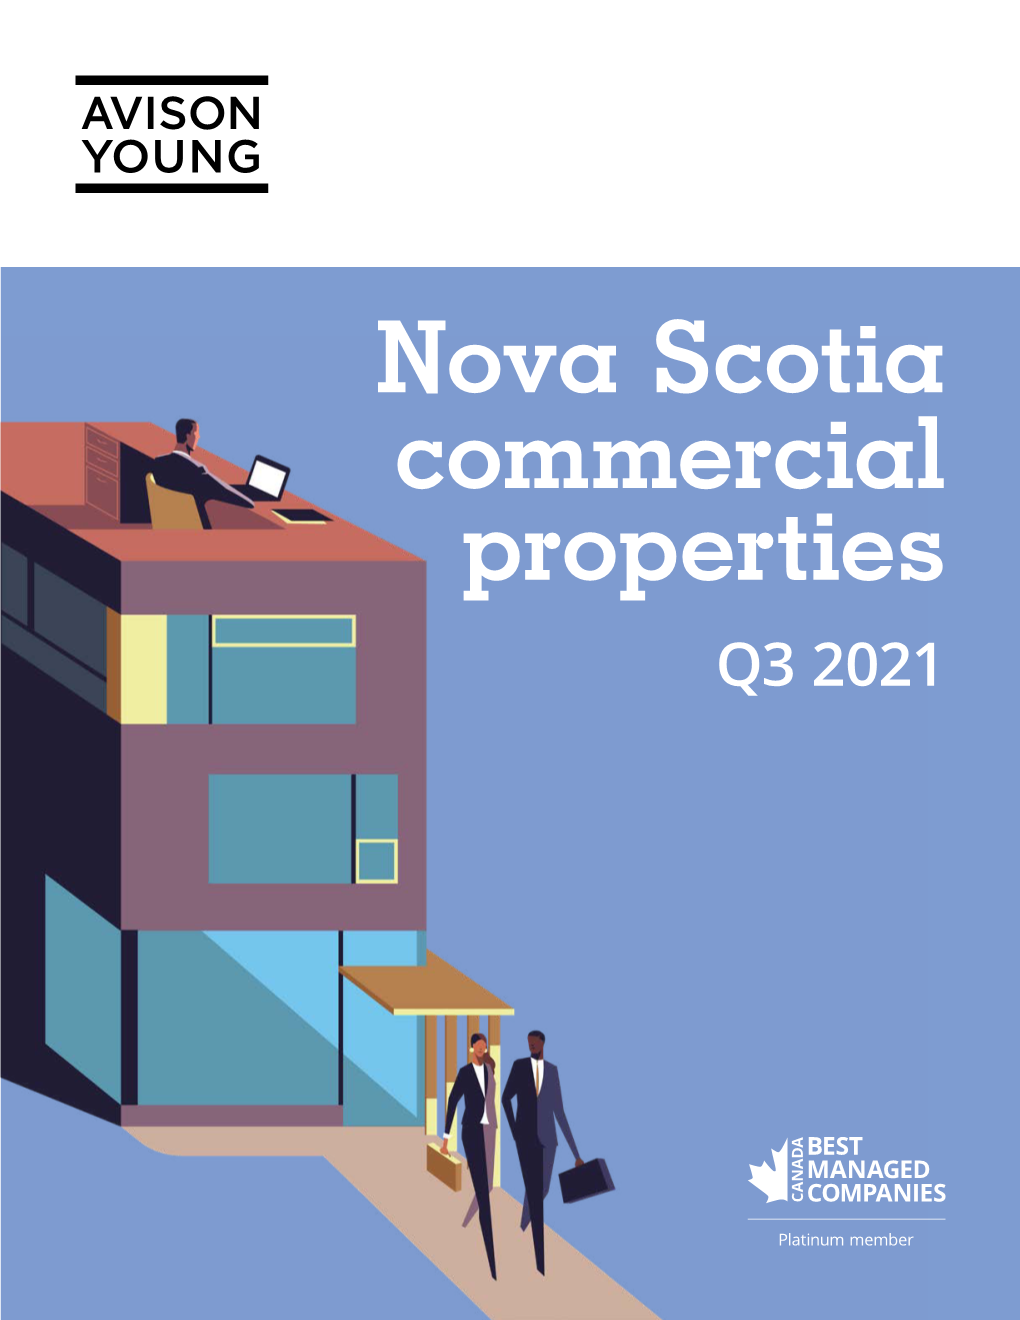 Commercial Nova Scotia Properties